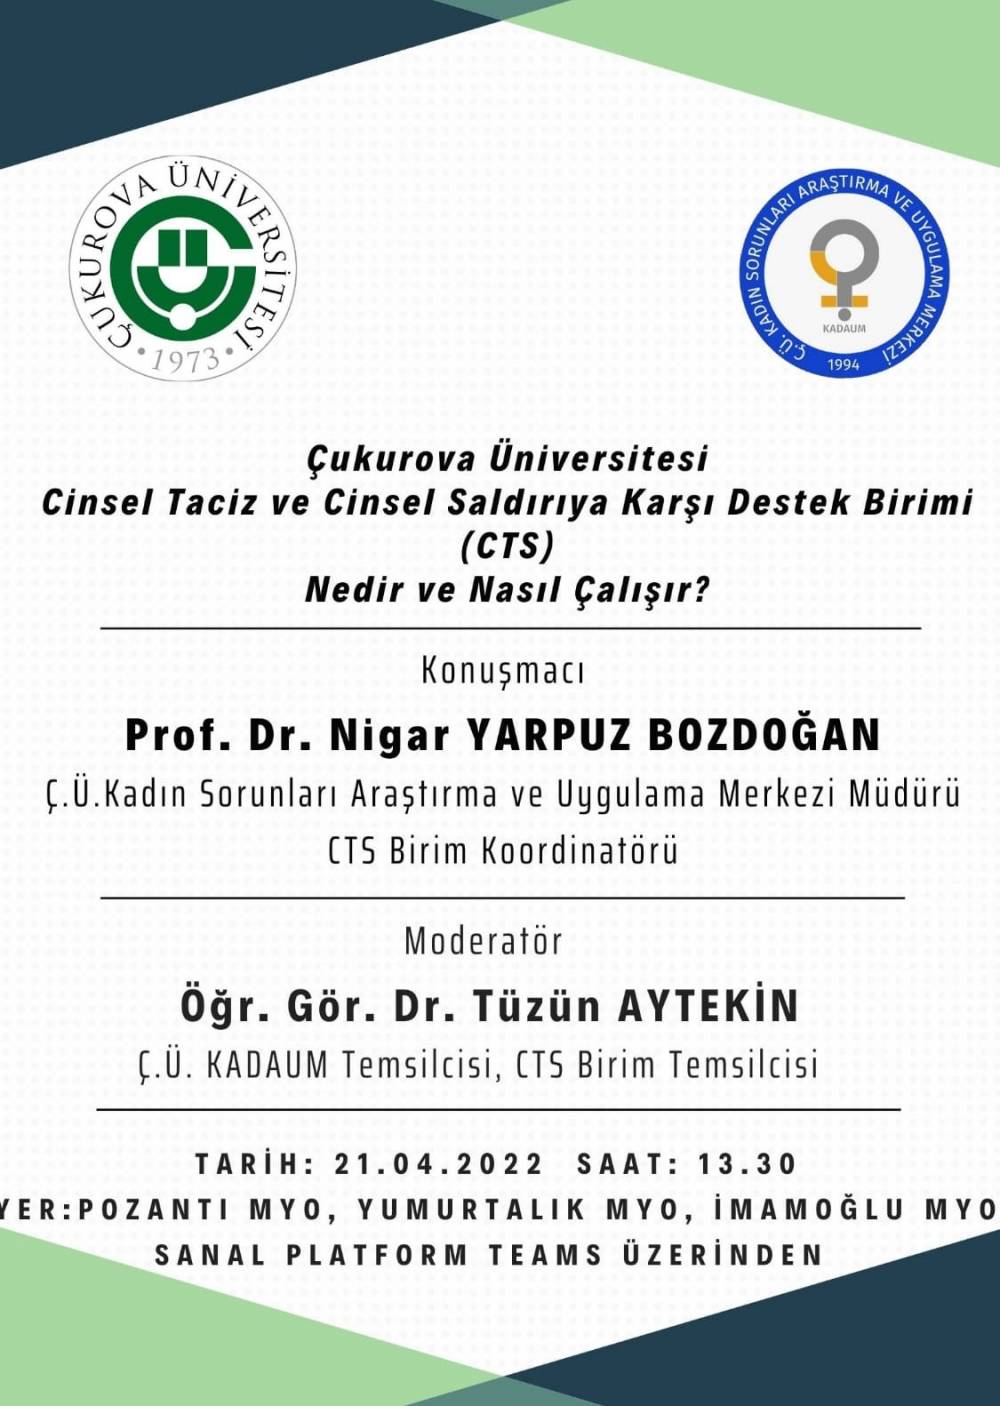 Çukurova Üniversitesi Cinsel Taciz ve Cinsel Saldırıya Karşı Destek Birimi (CTS) hakkında bilgilendirme sunumu